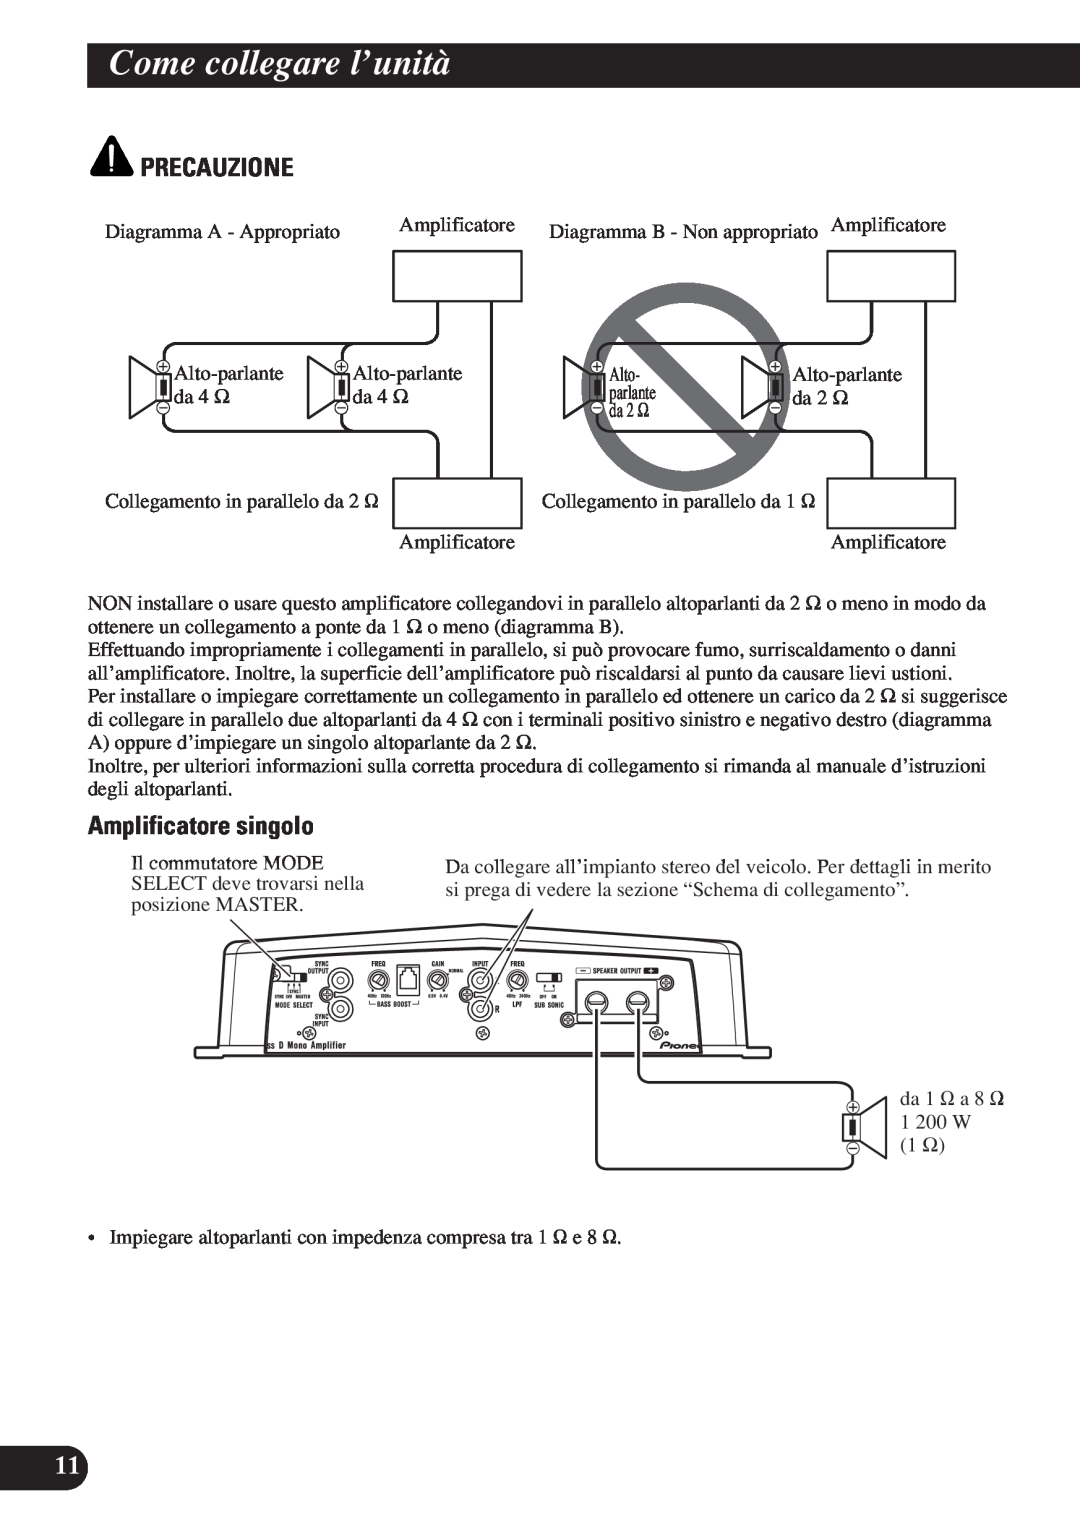 Pioneer D1200SPL owner manual Amplificatore singolo, Come collegare l’unità, Precauzione 